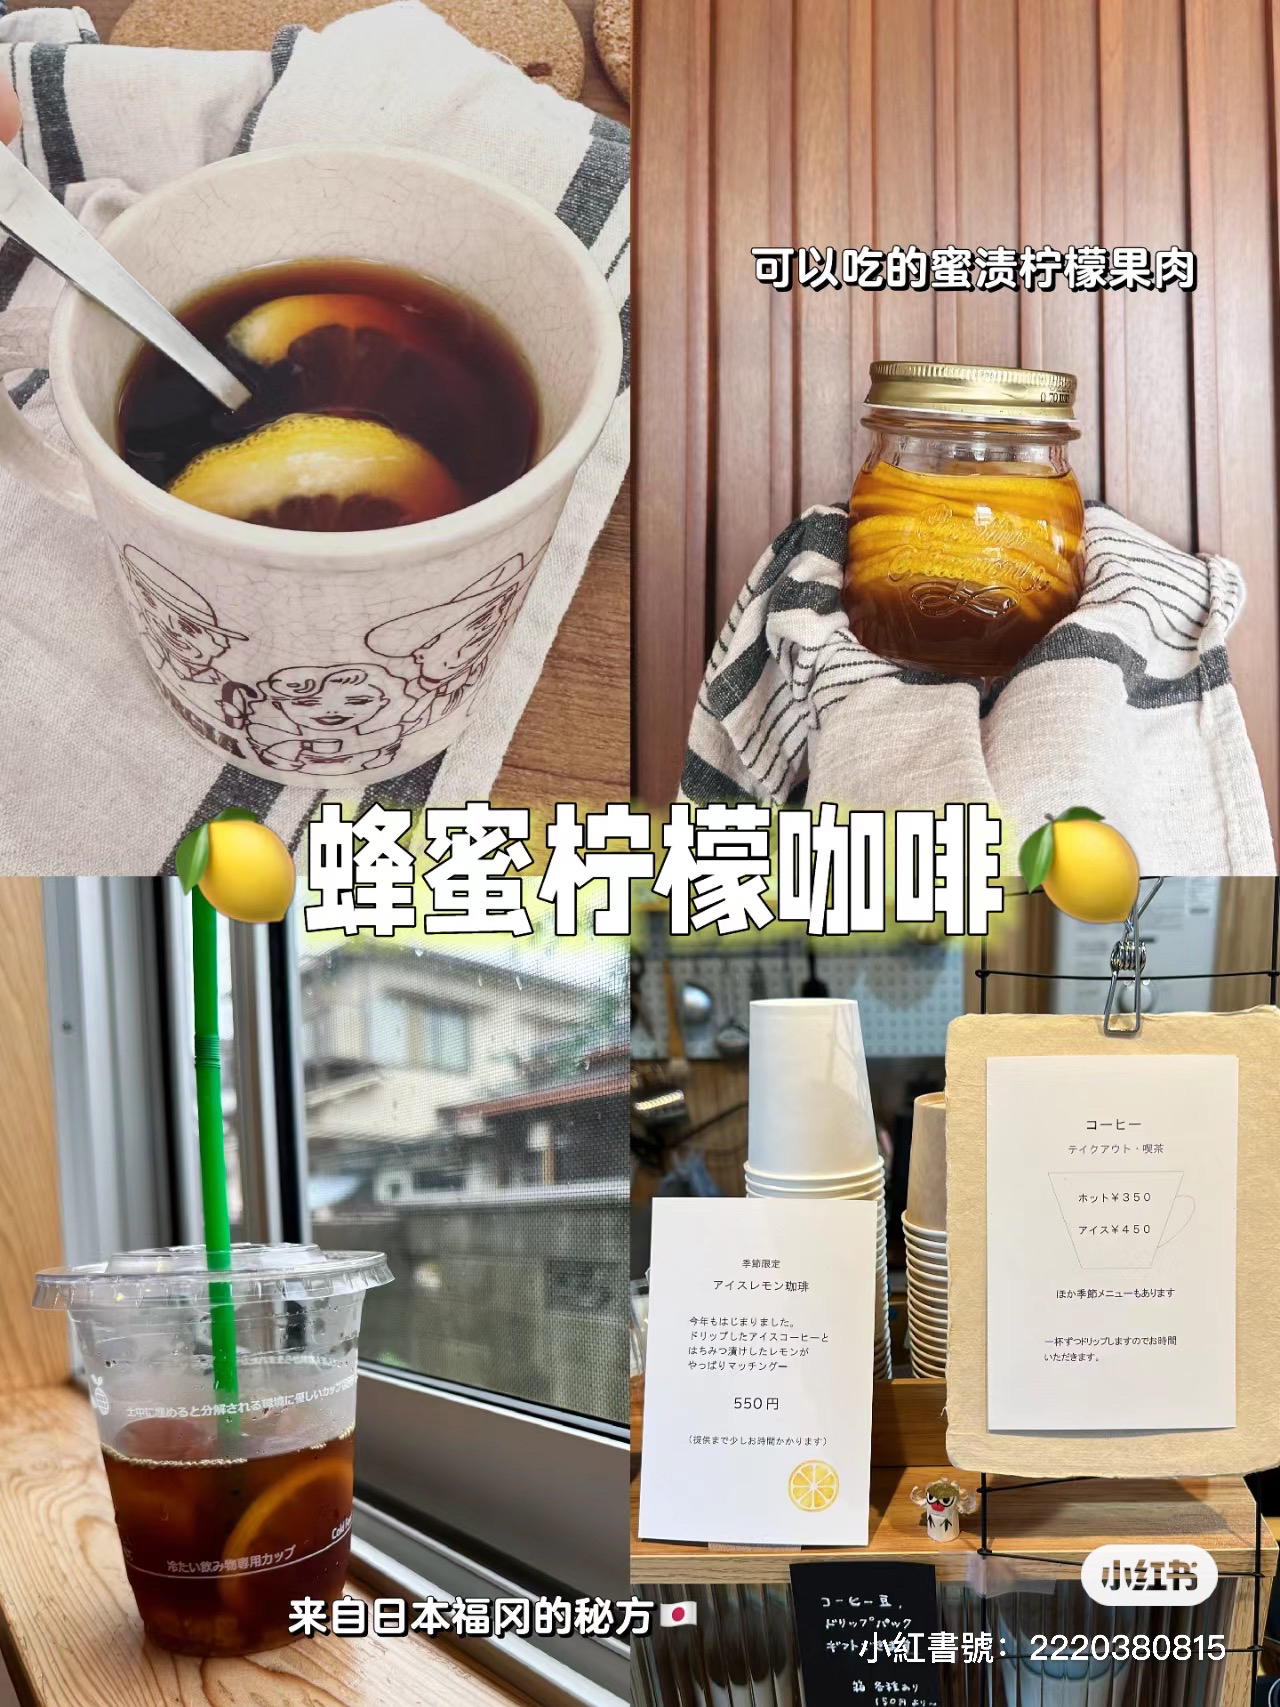 ☕️蜂蜜柠檬咖啡🇯🇵福冈咖啡店店主分享蜂蜜柠檬做法的做法